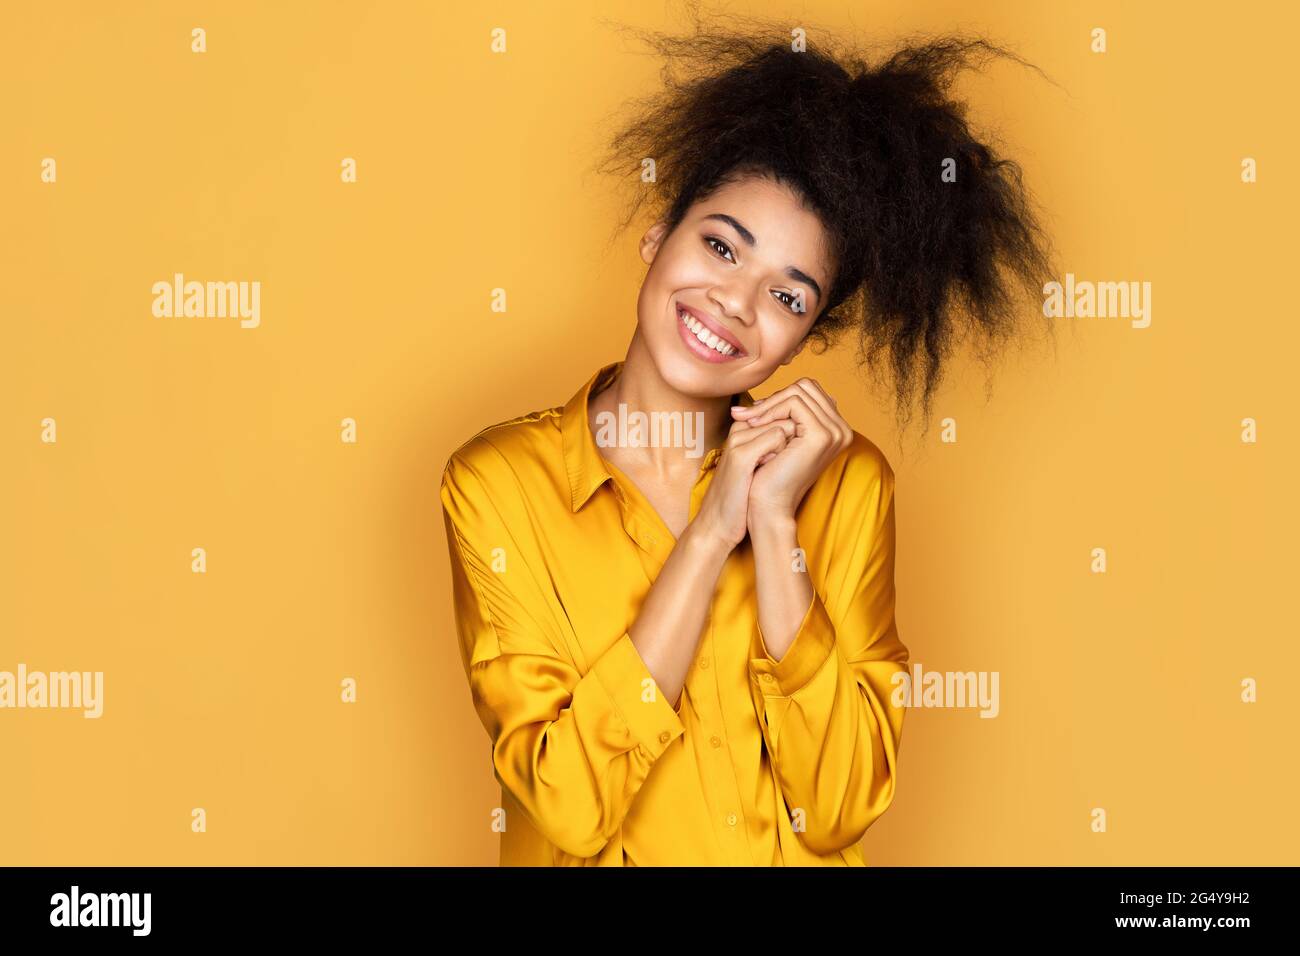 Schönes lächelndes Mädchen hält die Hände unter dem Kinn zusammengedrückt, sieht etwas nettes an. Foto von afroamerikanischen Mädchen auf gelbem Hintergrund Stockfoto